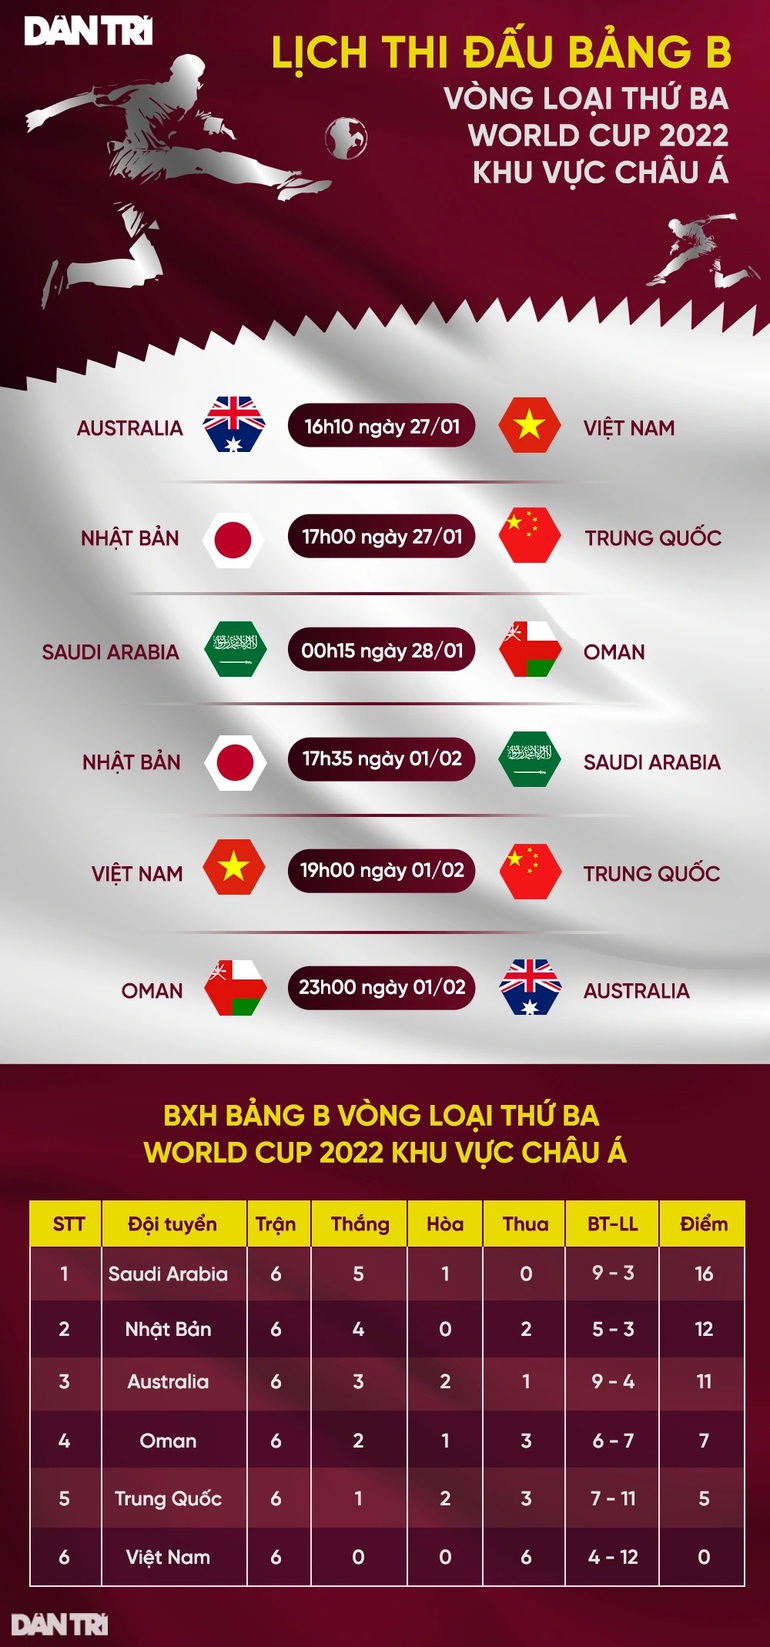 Vé xem trận tuyển Việt Nam gặp Trung Quốc cao nhất là 1,2 triệu đồng - 2